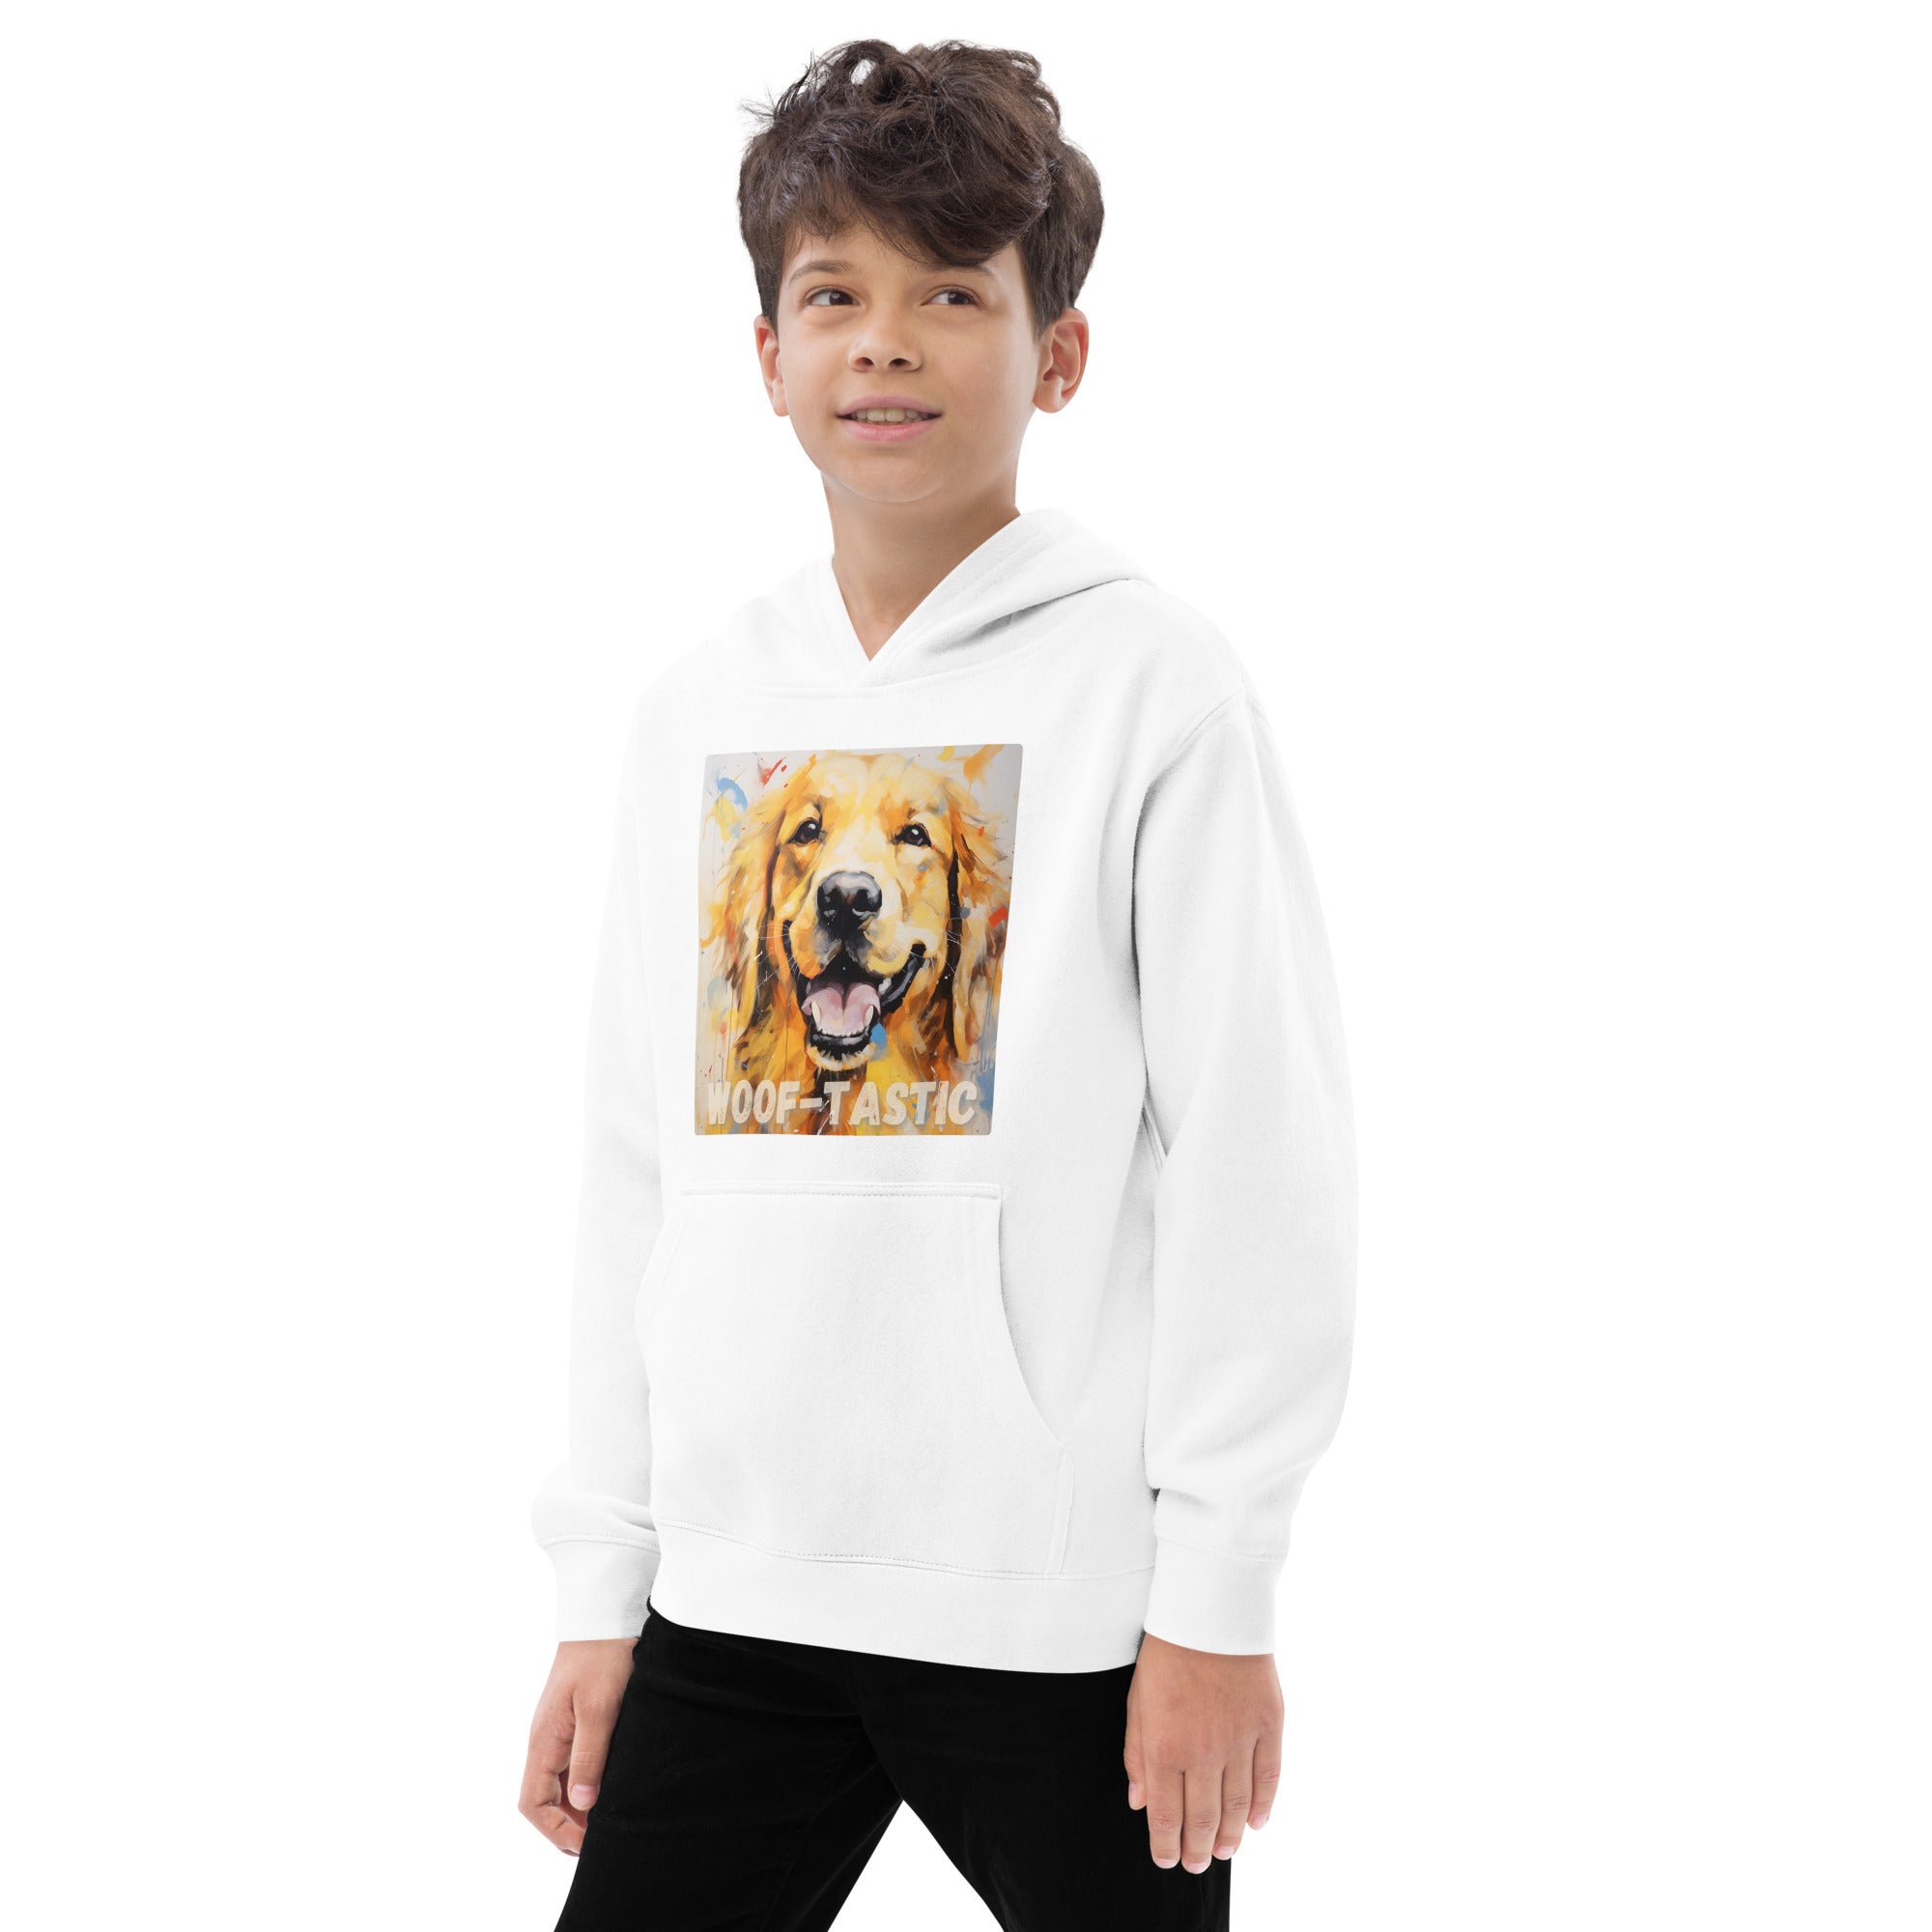 Kids fleece hoodie Woof-tastic Golden Retriever